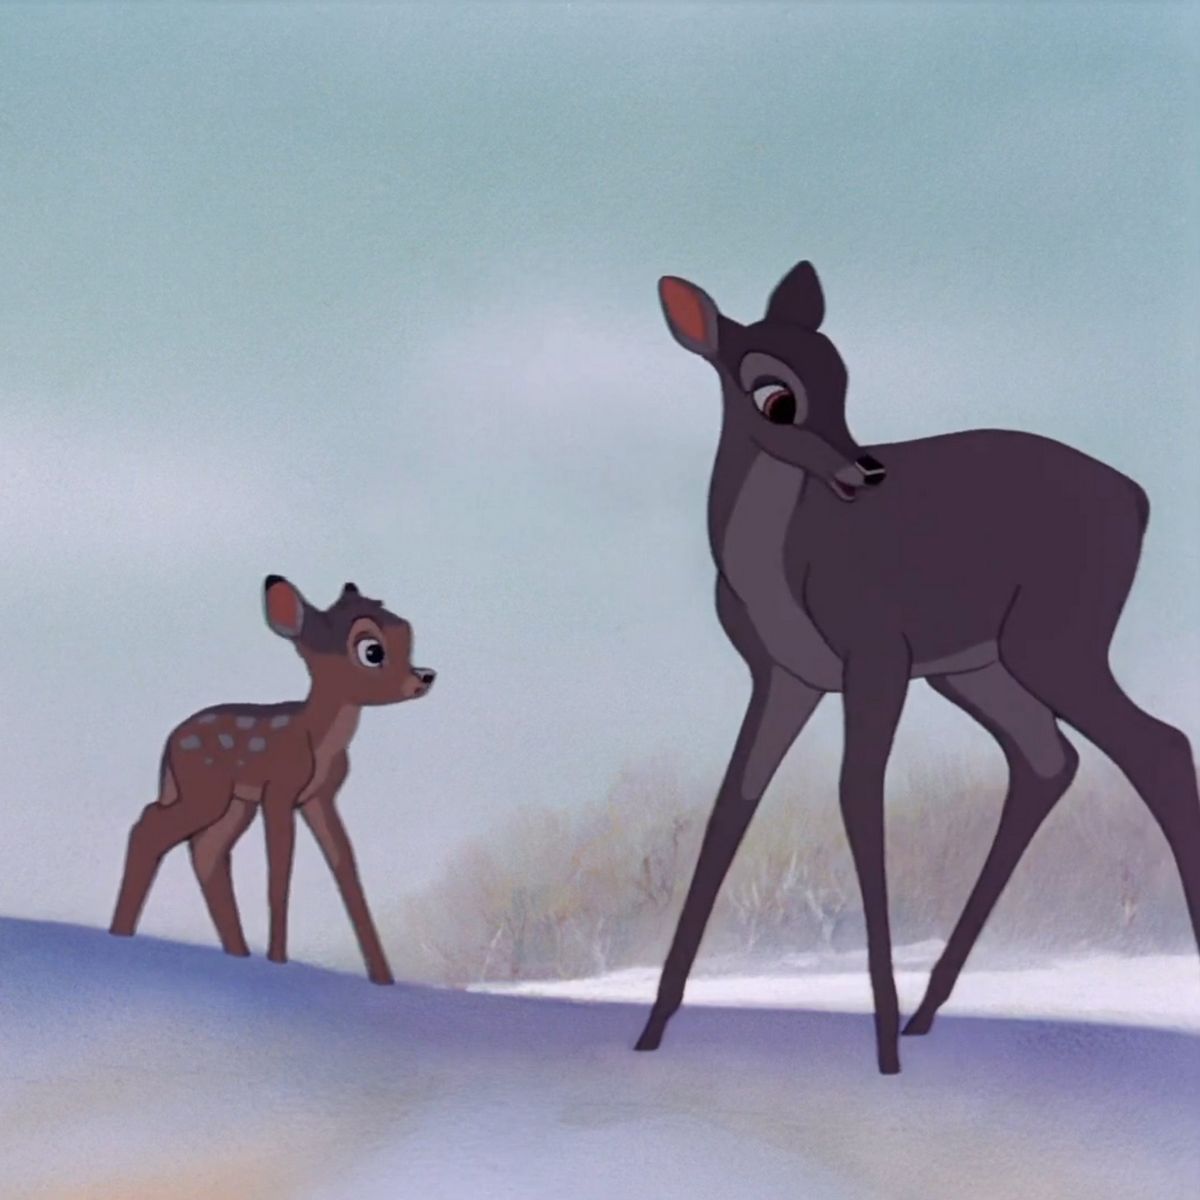 Le film original de 1942 raconte l'histoire de Bambi, qui grandit dans la forêt et est confronté à la perte de sa mère et aux défis de la vie.